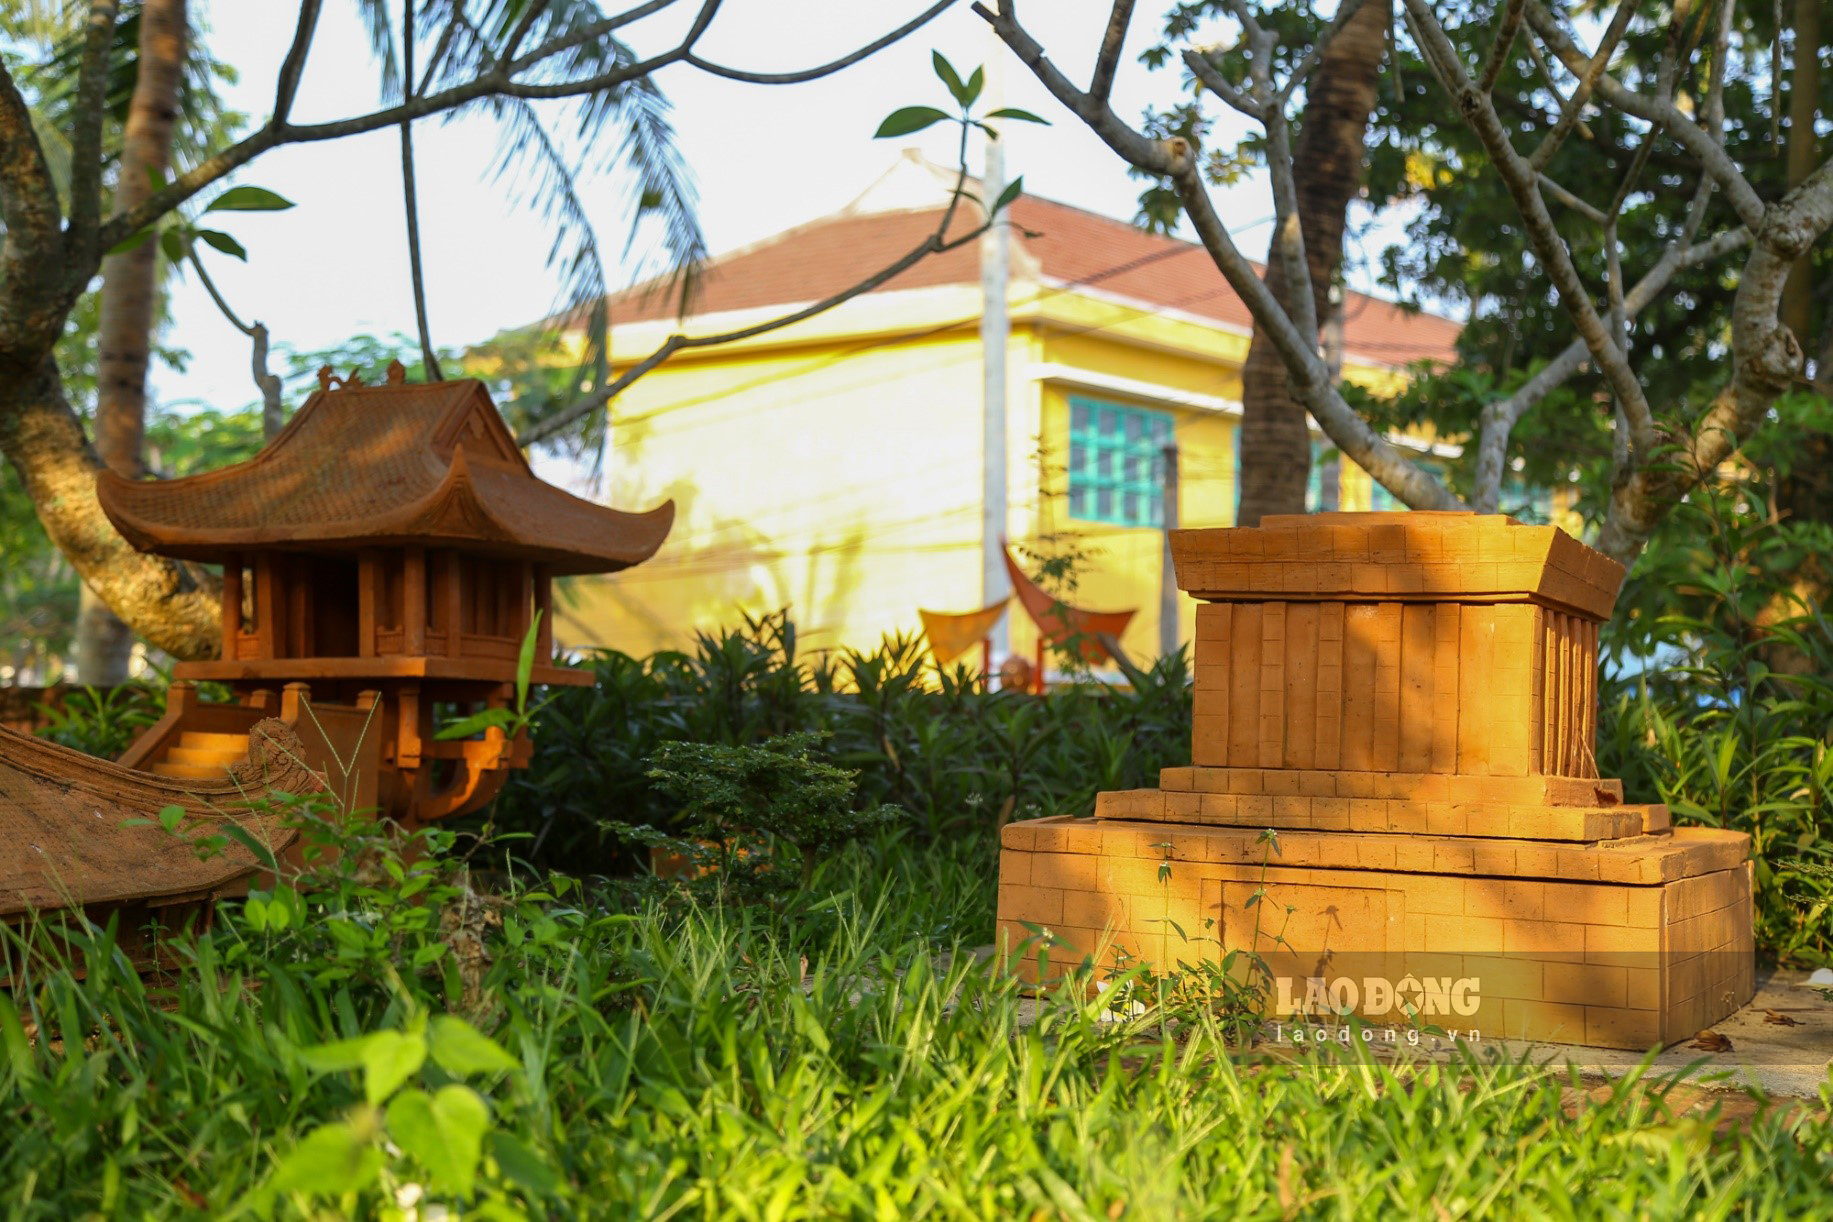 Mô hình Lăng Chủ tịch Hồ Chí Minh và Chùa Một Cột ở Hà Nội xuất hiện trong công viên.